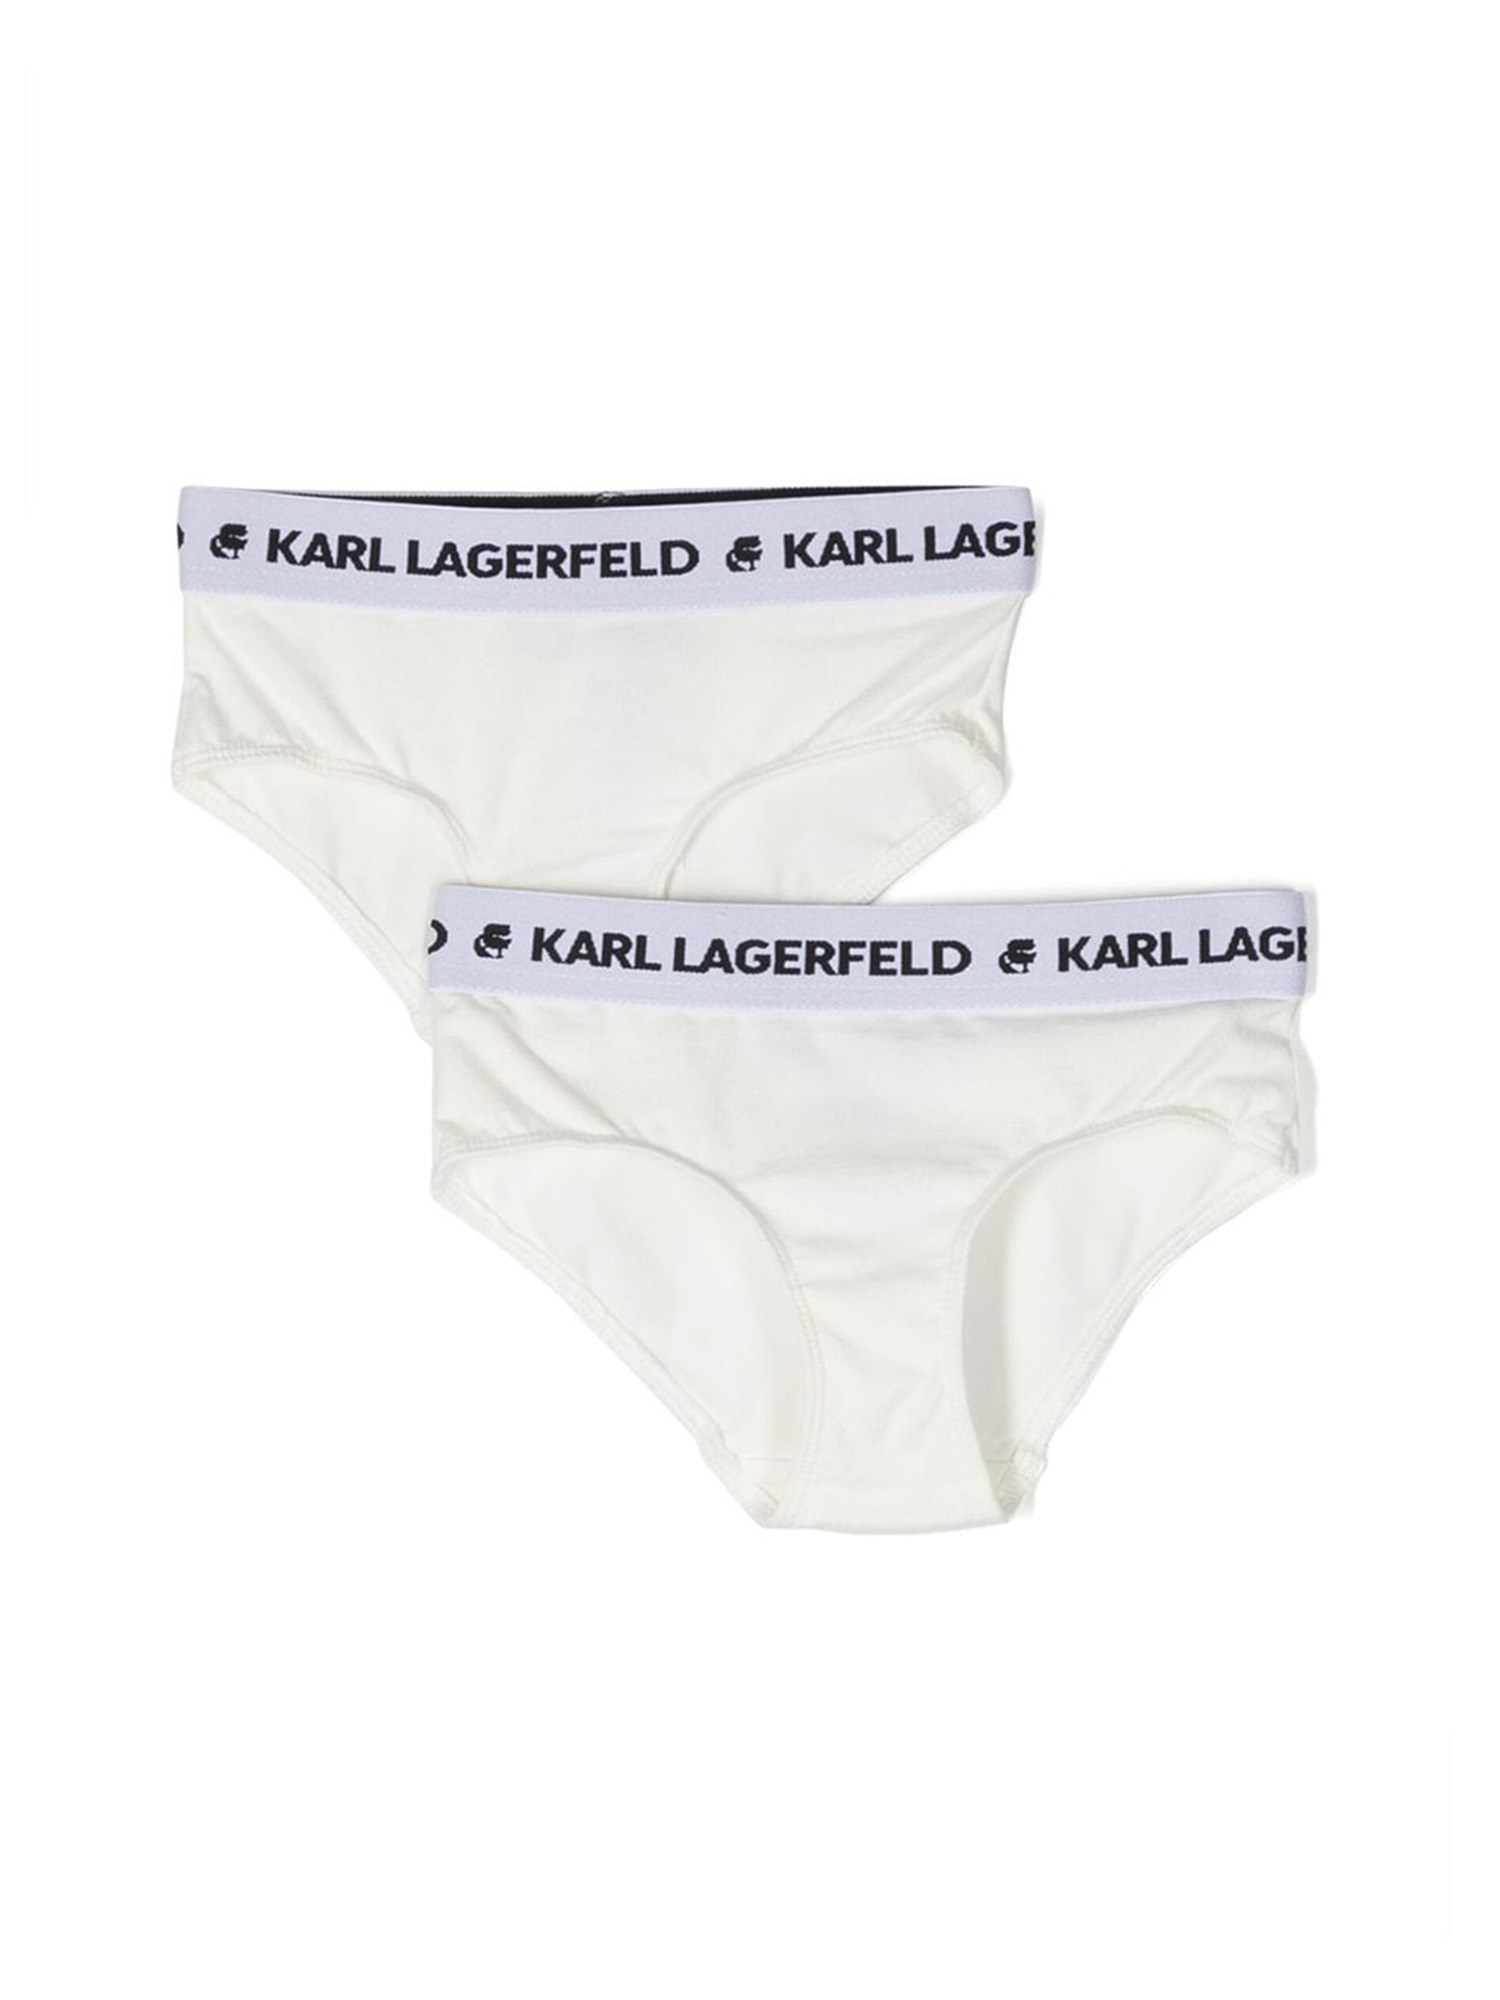 karl lagerfeld set of 2 logoed elastic briefs